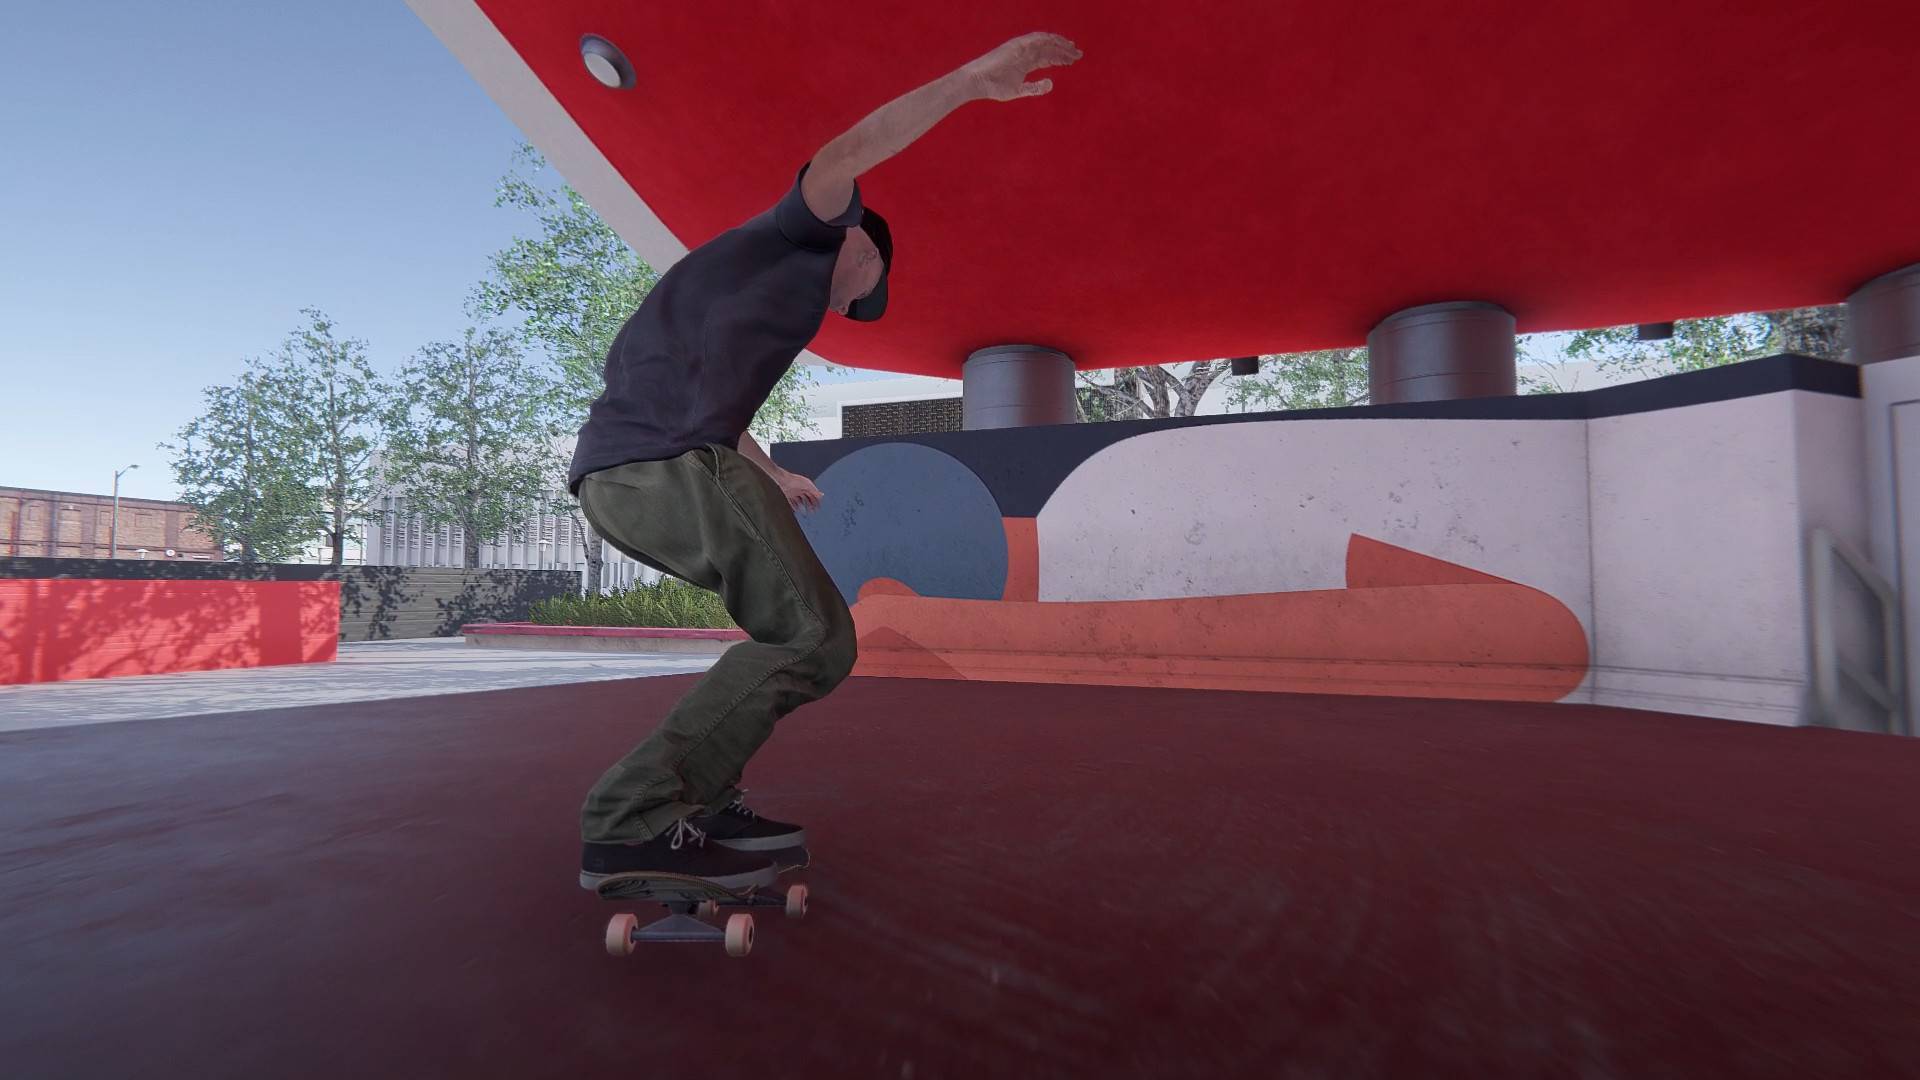 Skater XL: conheça o jogo de skate com gameplay inovador que chega